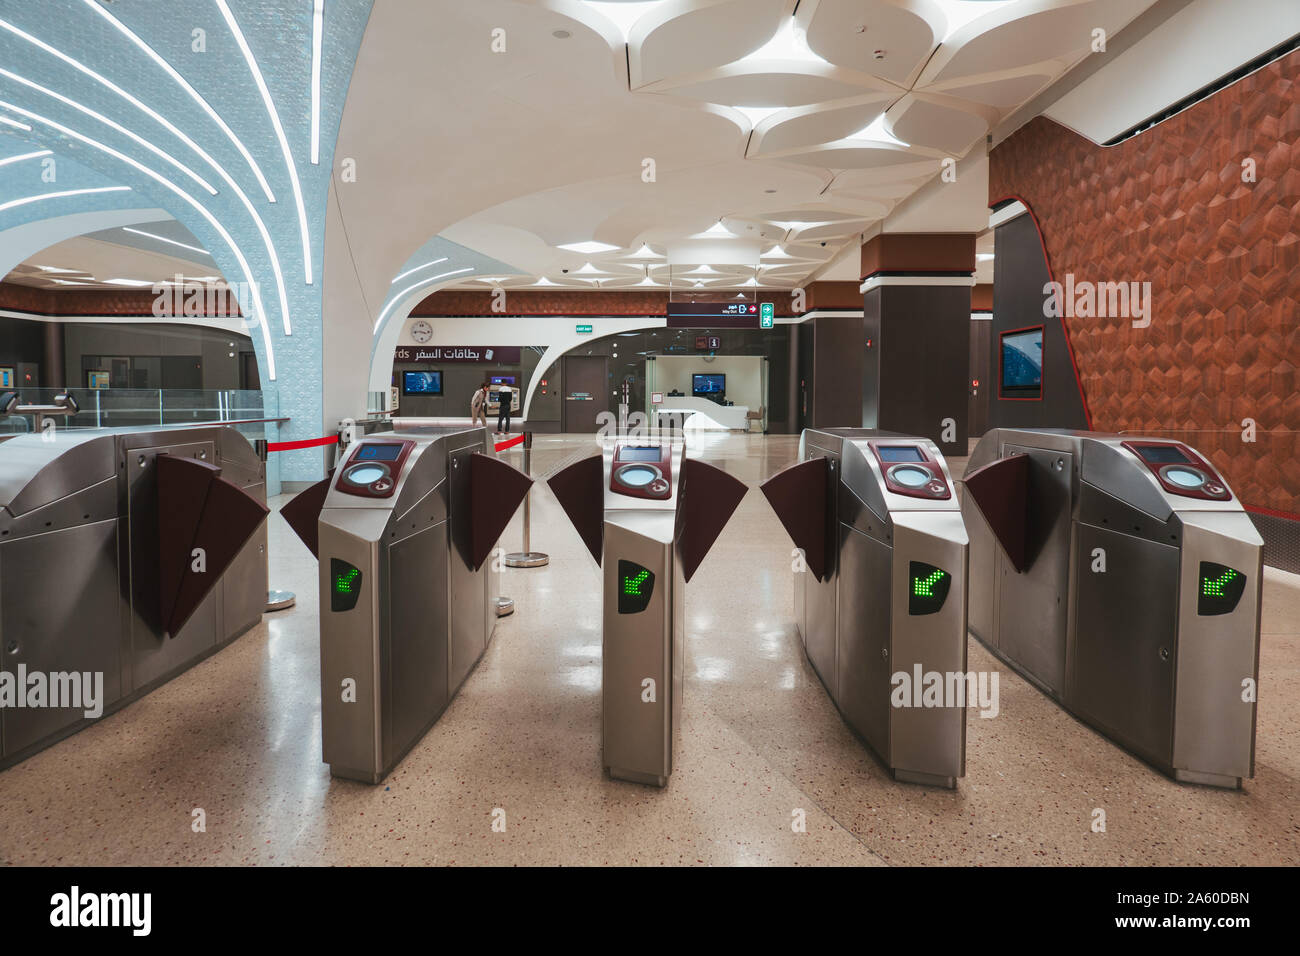 Le paiement du tarif de portes à une station de métro à Doha, Qatar. Ils fonctionnent à l'aide d'une carte à puce NFC rechargeable Banque D'Images